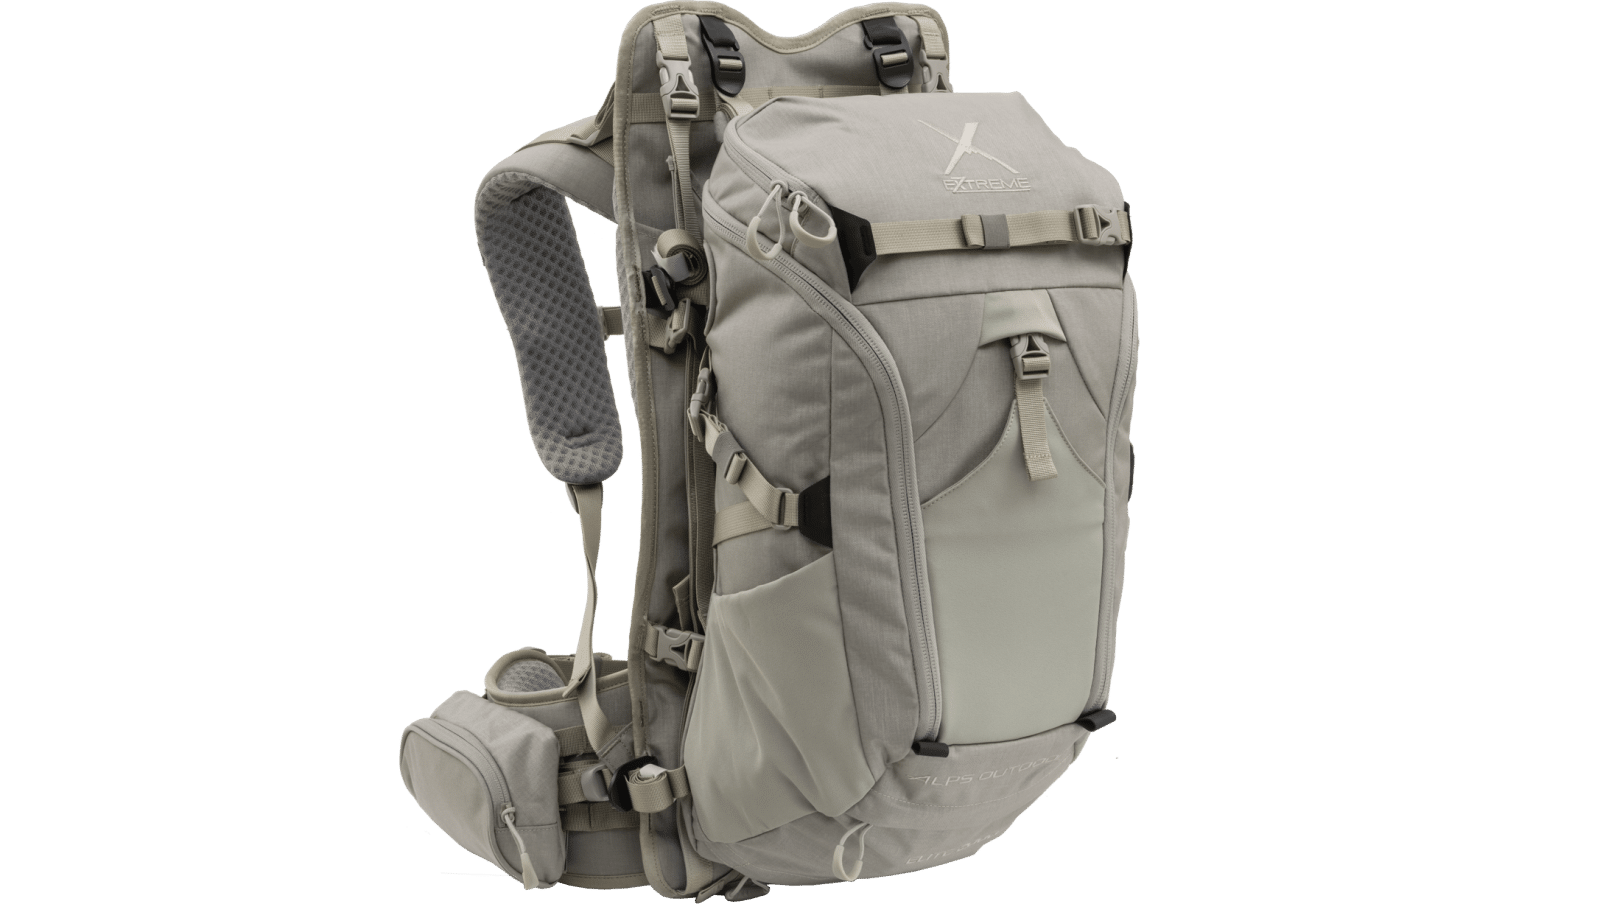 ALPS OutdoorZ Elite Wilderness Pack System